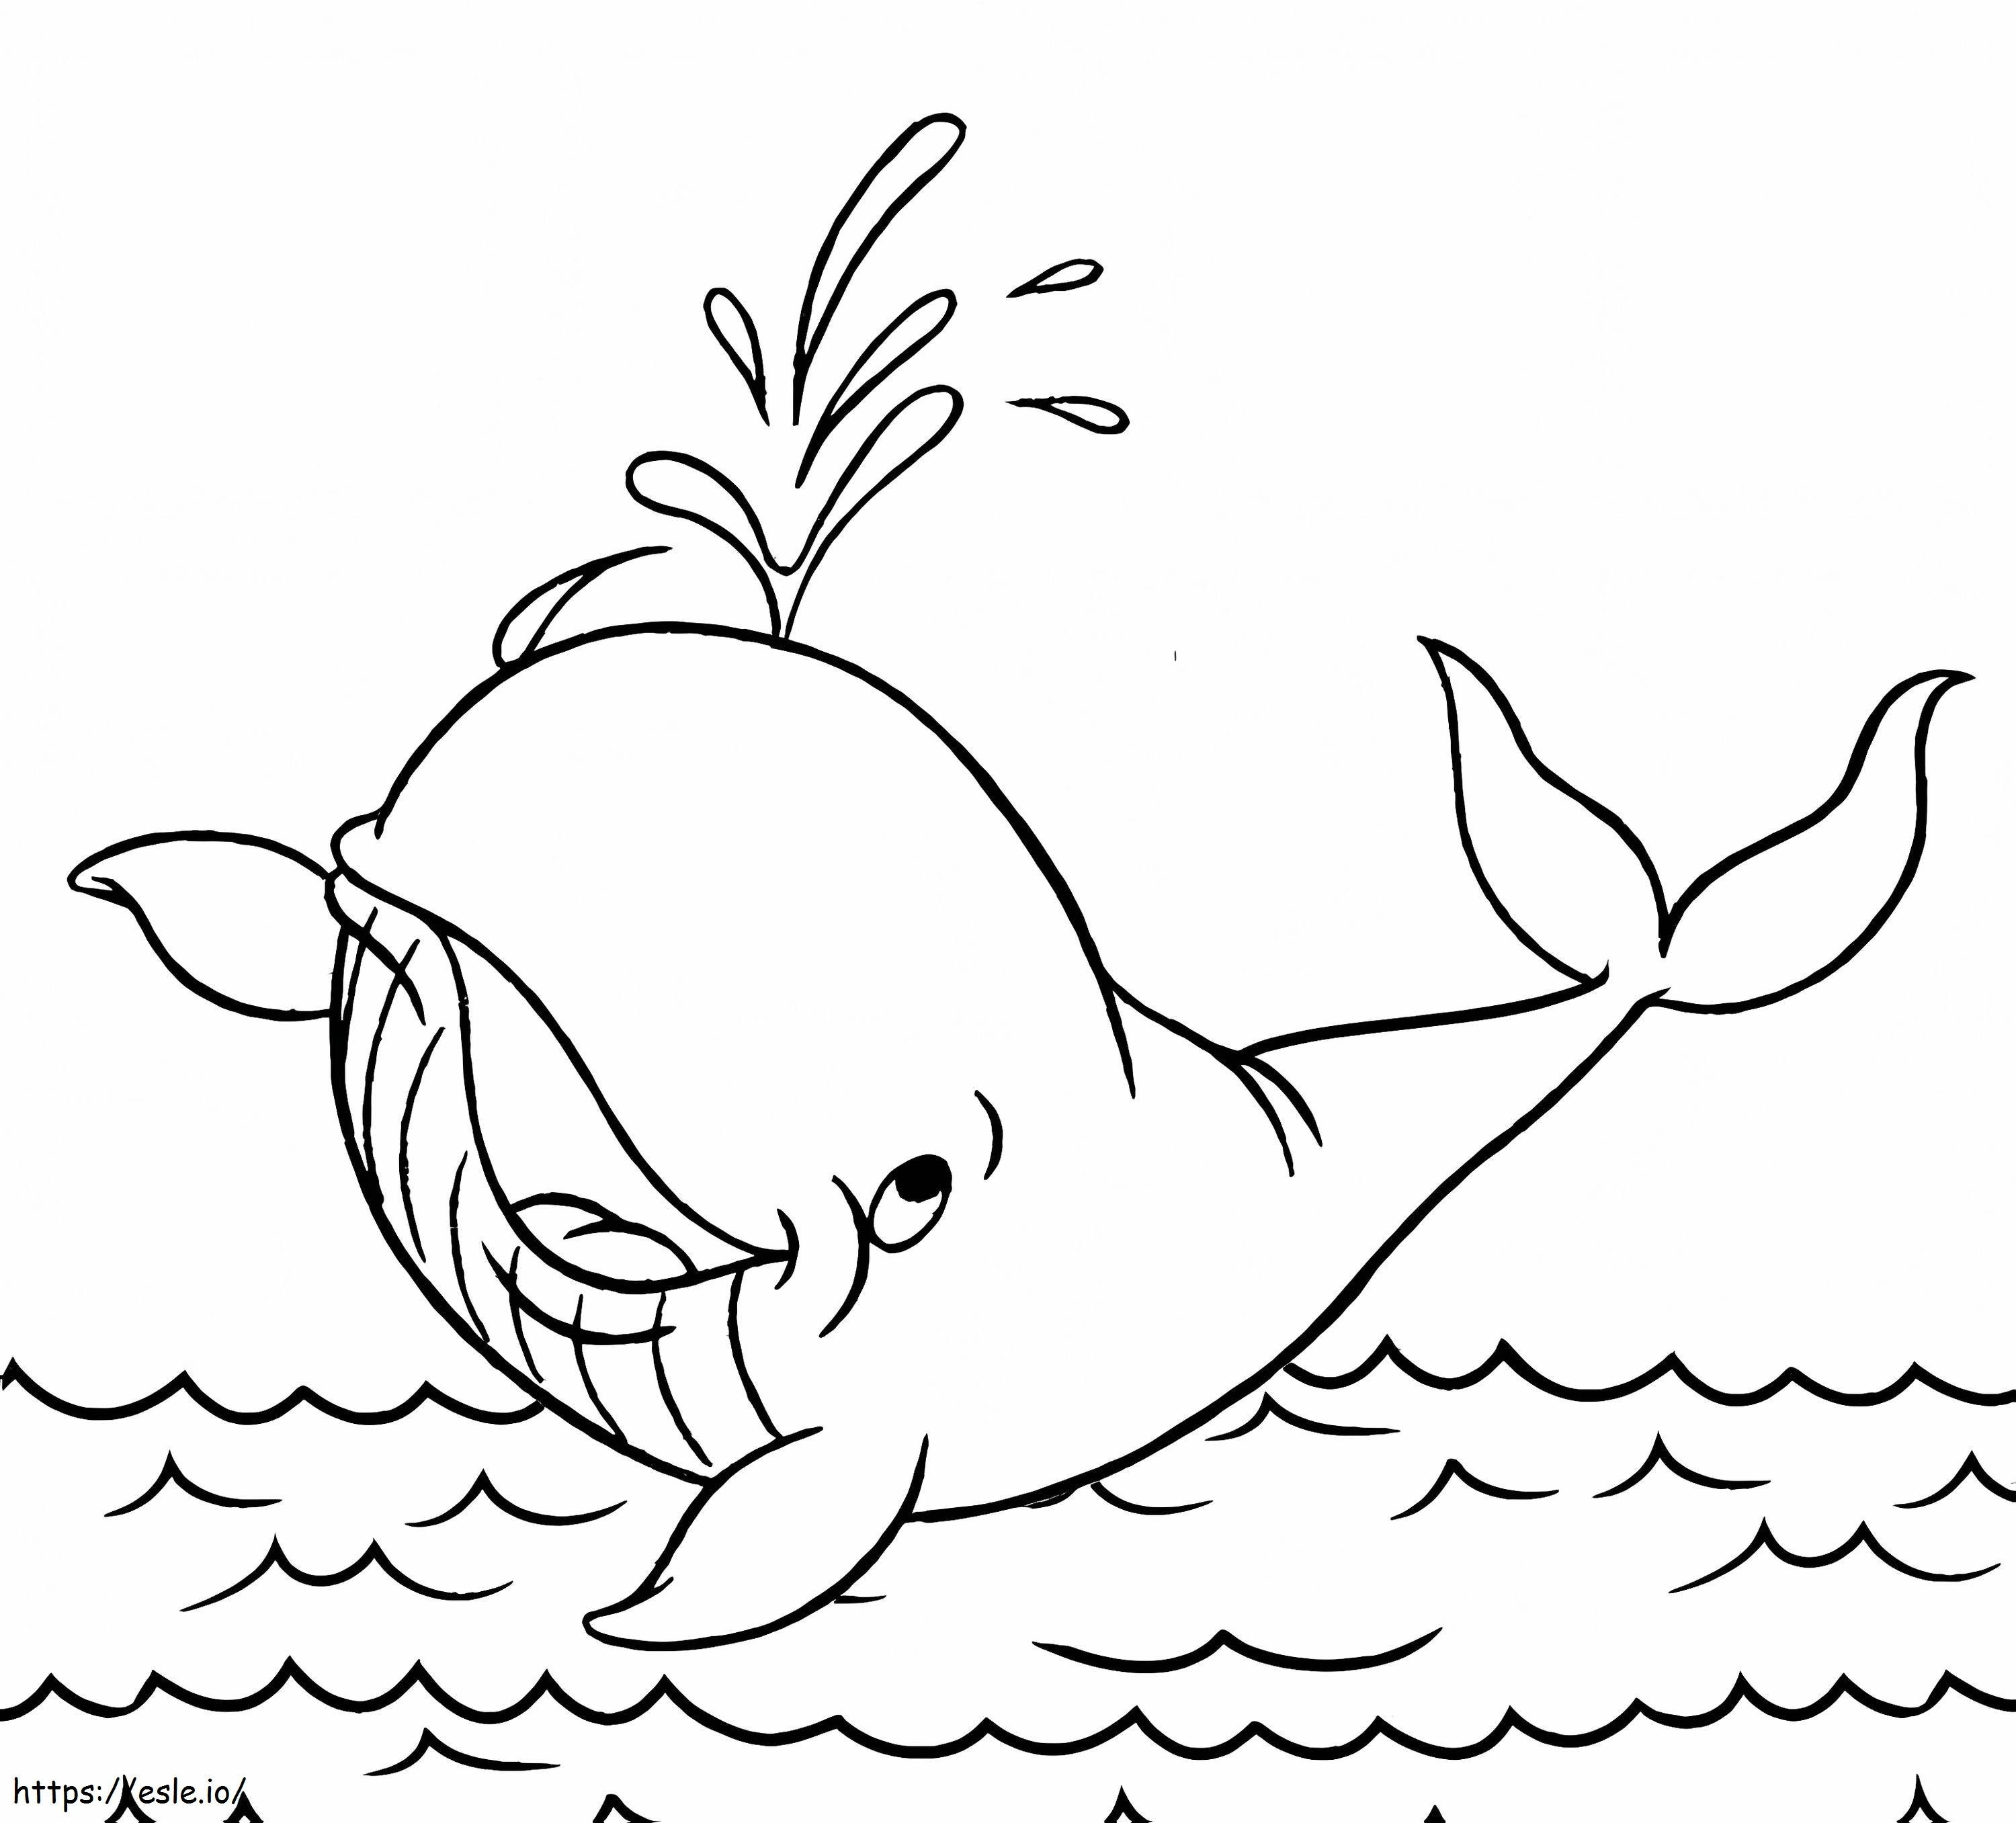 Desenhos de Baleia para colorir - Páginas para impressão grátis